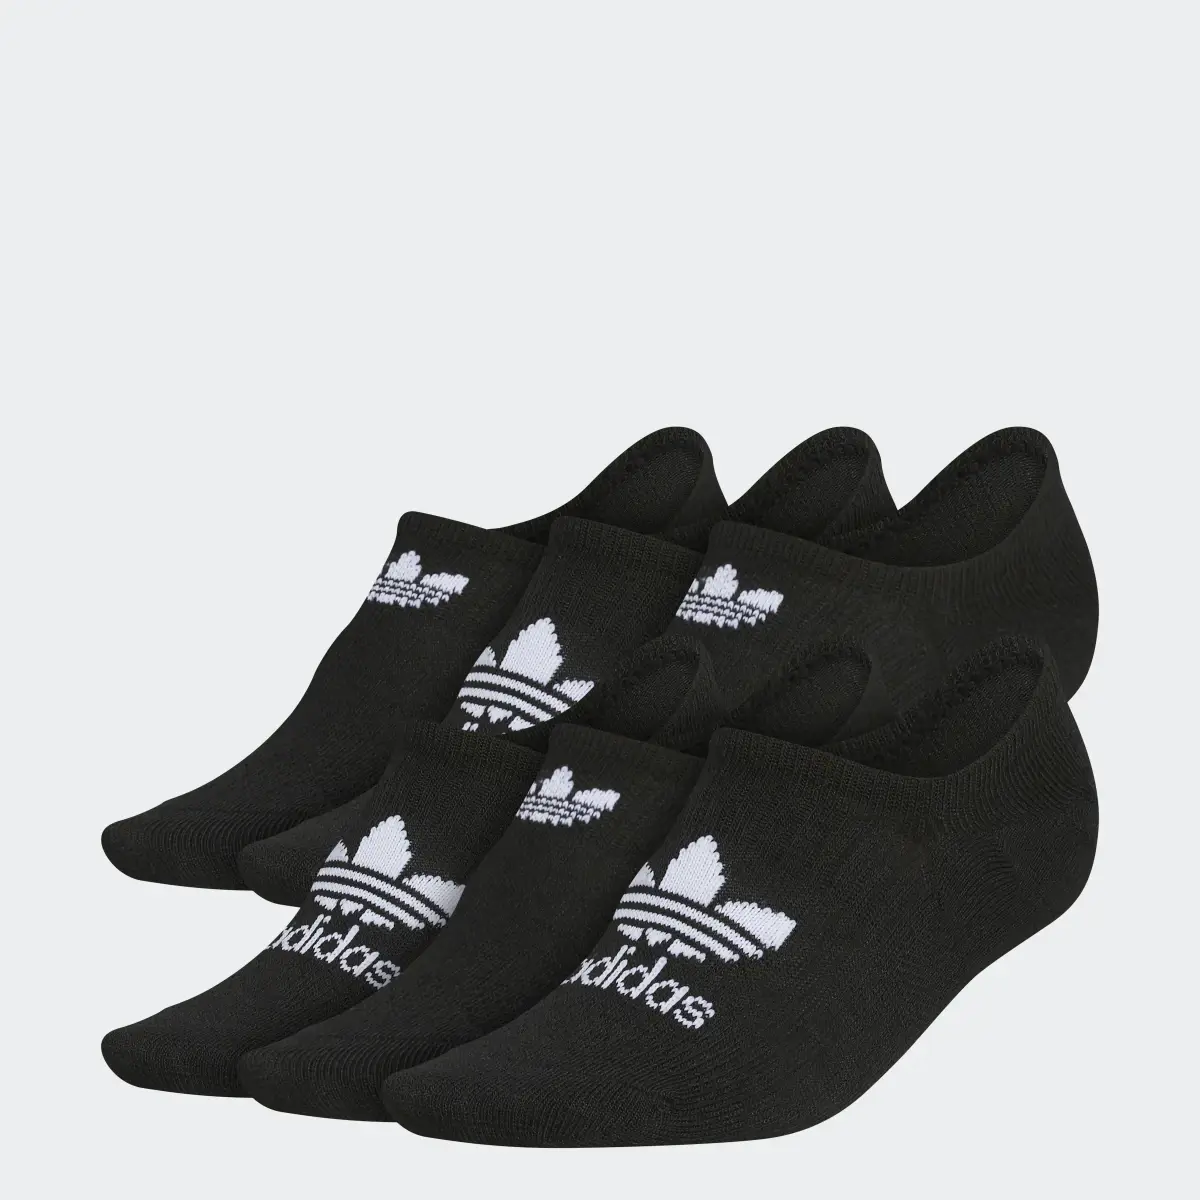 Adidas Classic Superlite Super-No-Show Socks 6 Pairs. 1